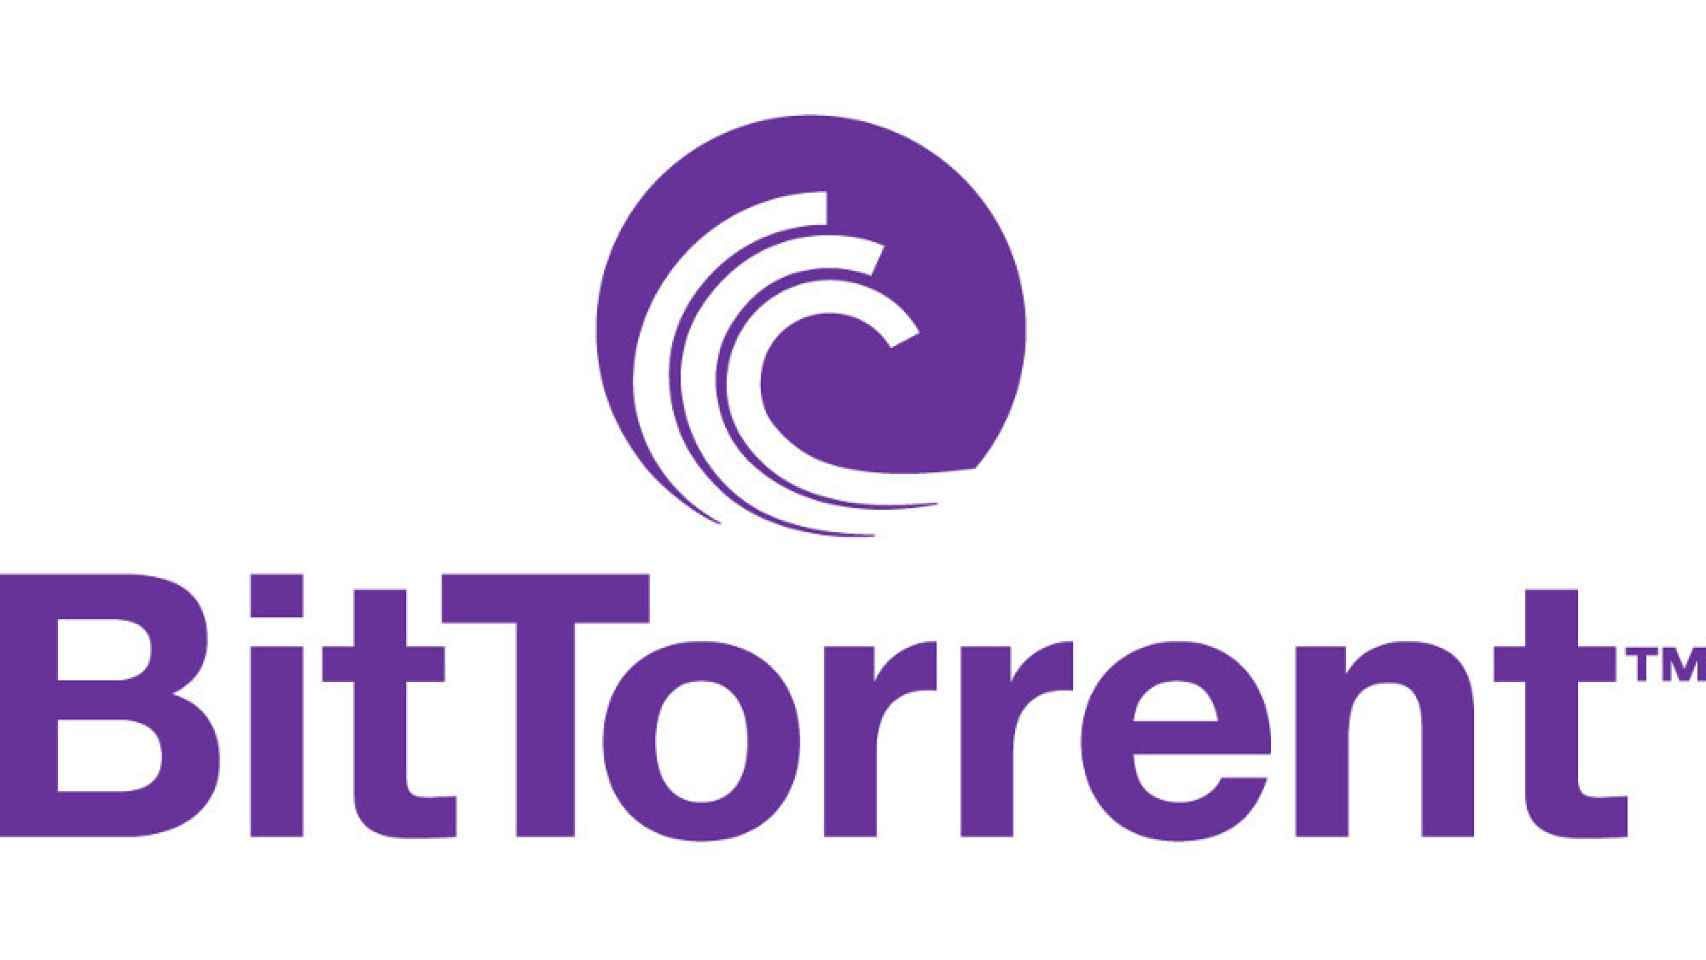 Bittorrent-Logo